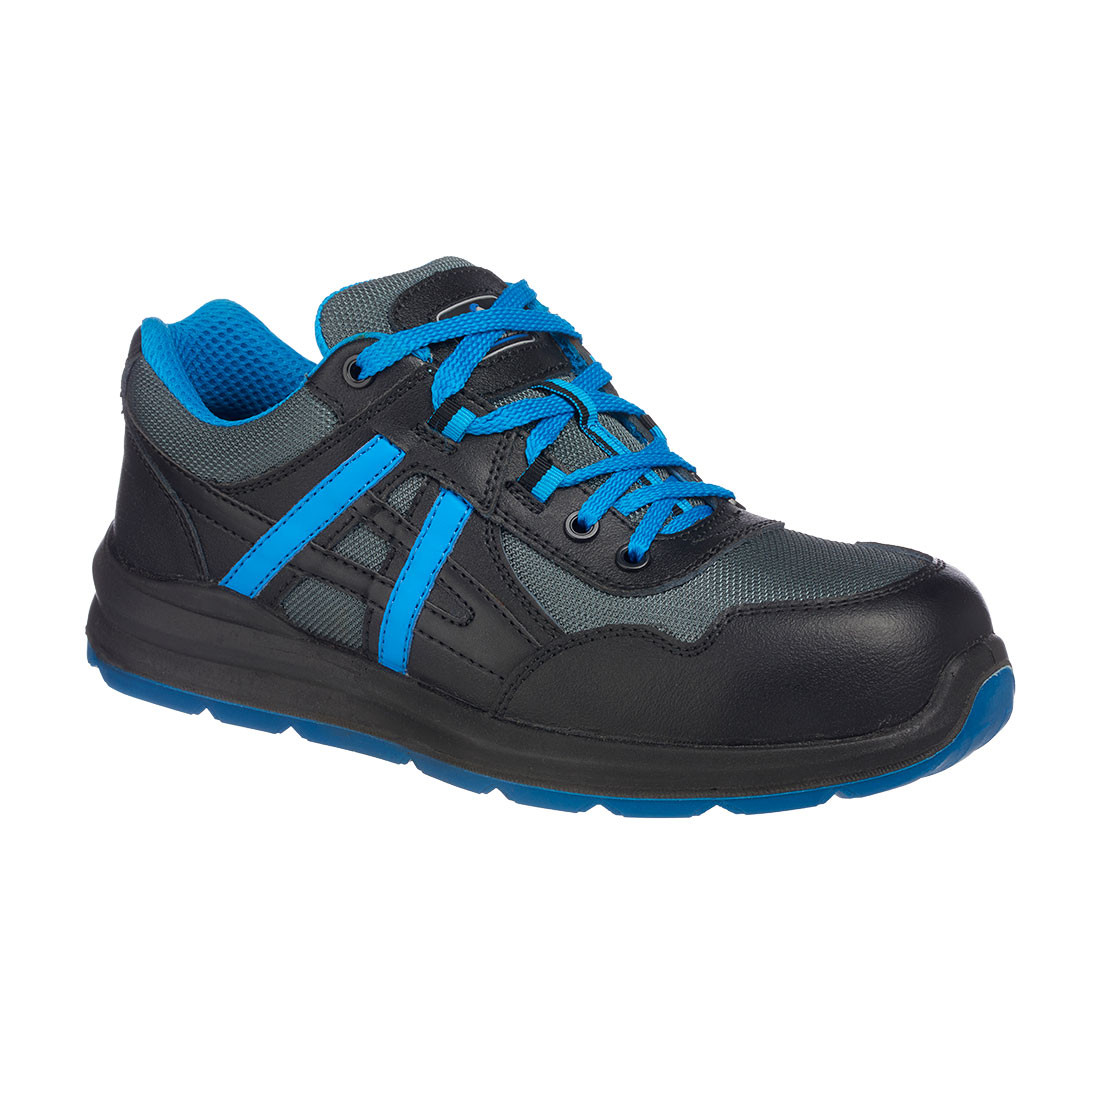 Pantofi Mersey Portwest Compositelite S1P - Incaltaminte de protectie | Bocanci, Pantofi, Sandale, Cizme